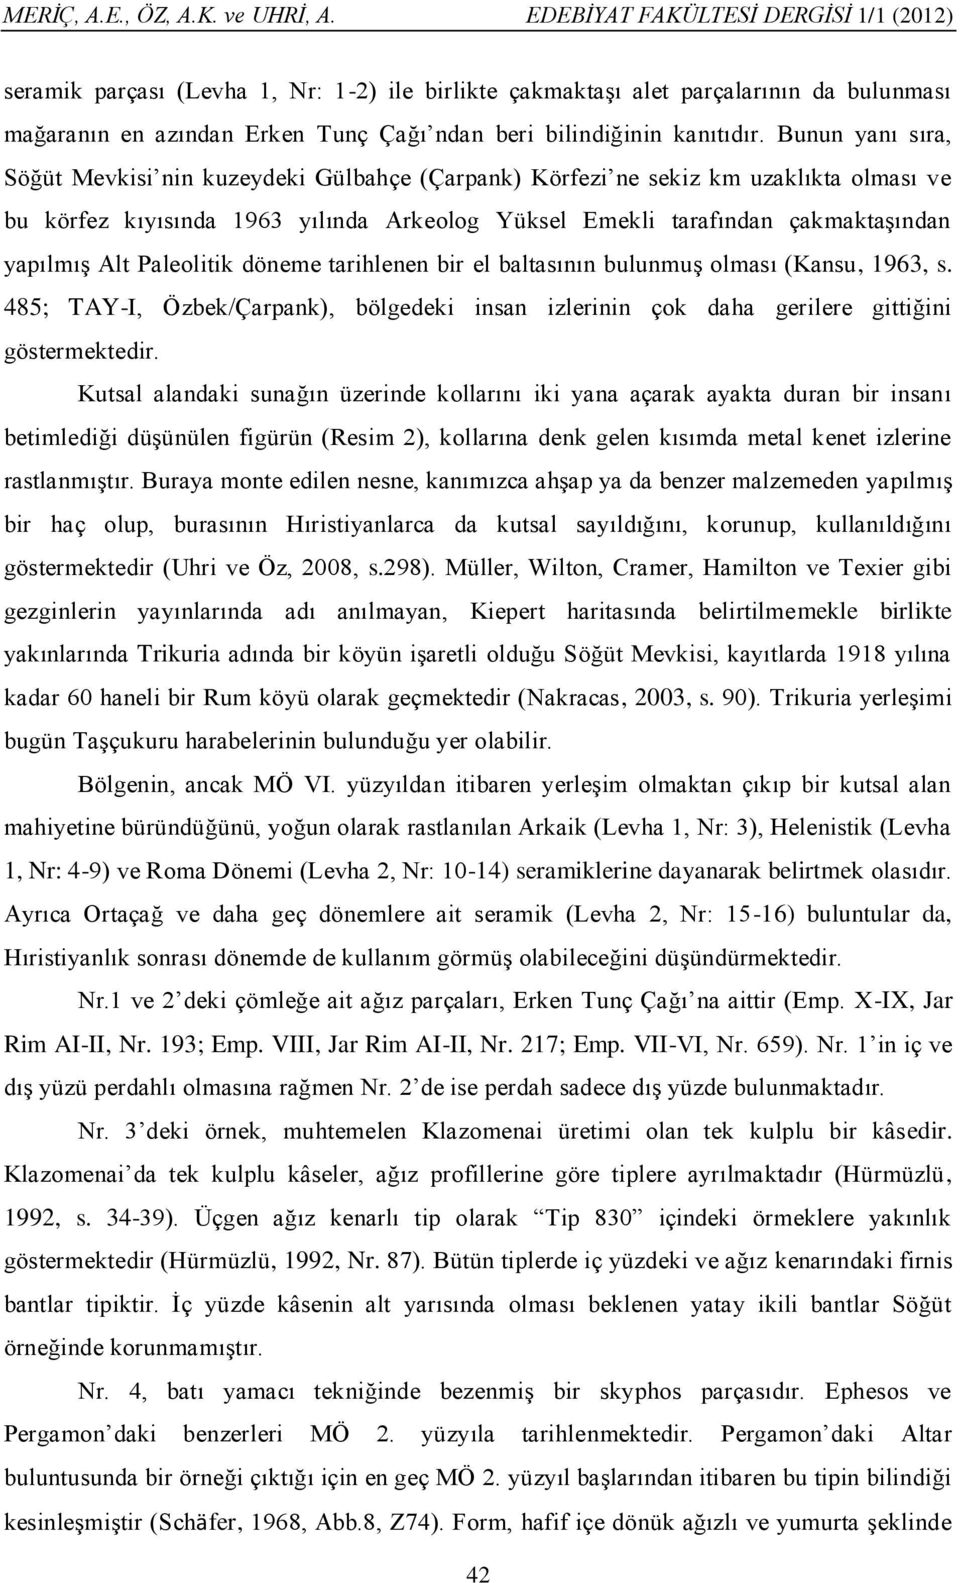 Paleolitik döneme tarihlenen bir el baltasının bulunmuş olması (Kansu, 1963, s. 485; TAY-I, Özbek/Çarpank), bölgedeki insan izlerinin çok daha gerilere gittiğini göstermektedir.